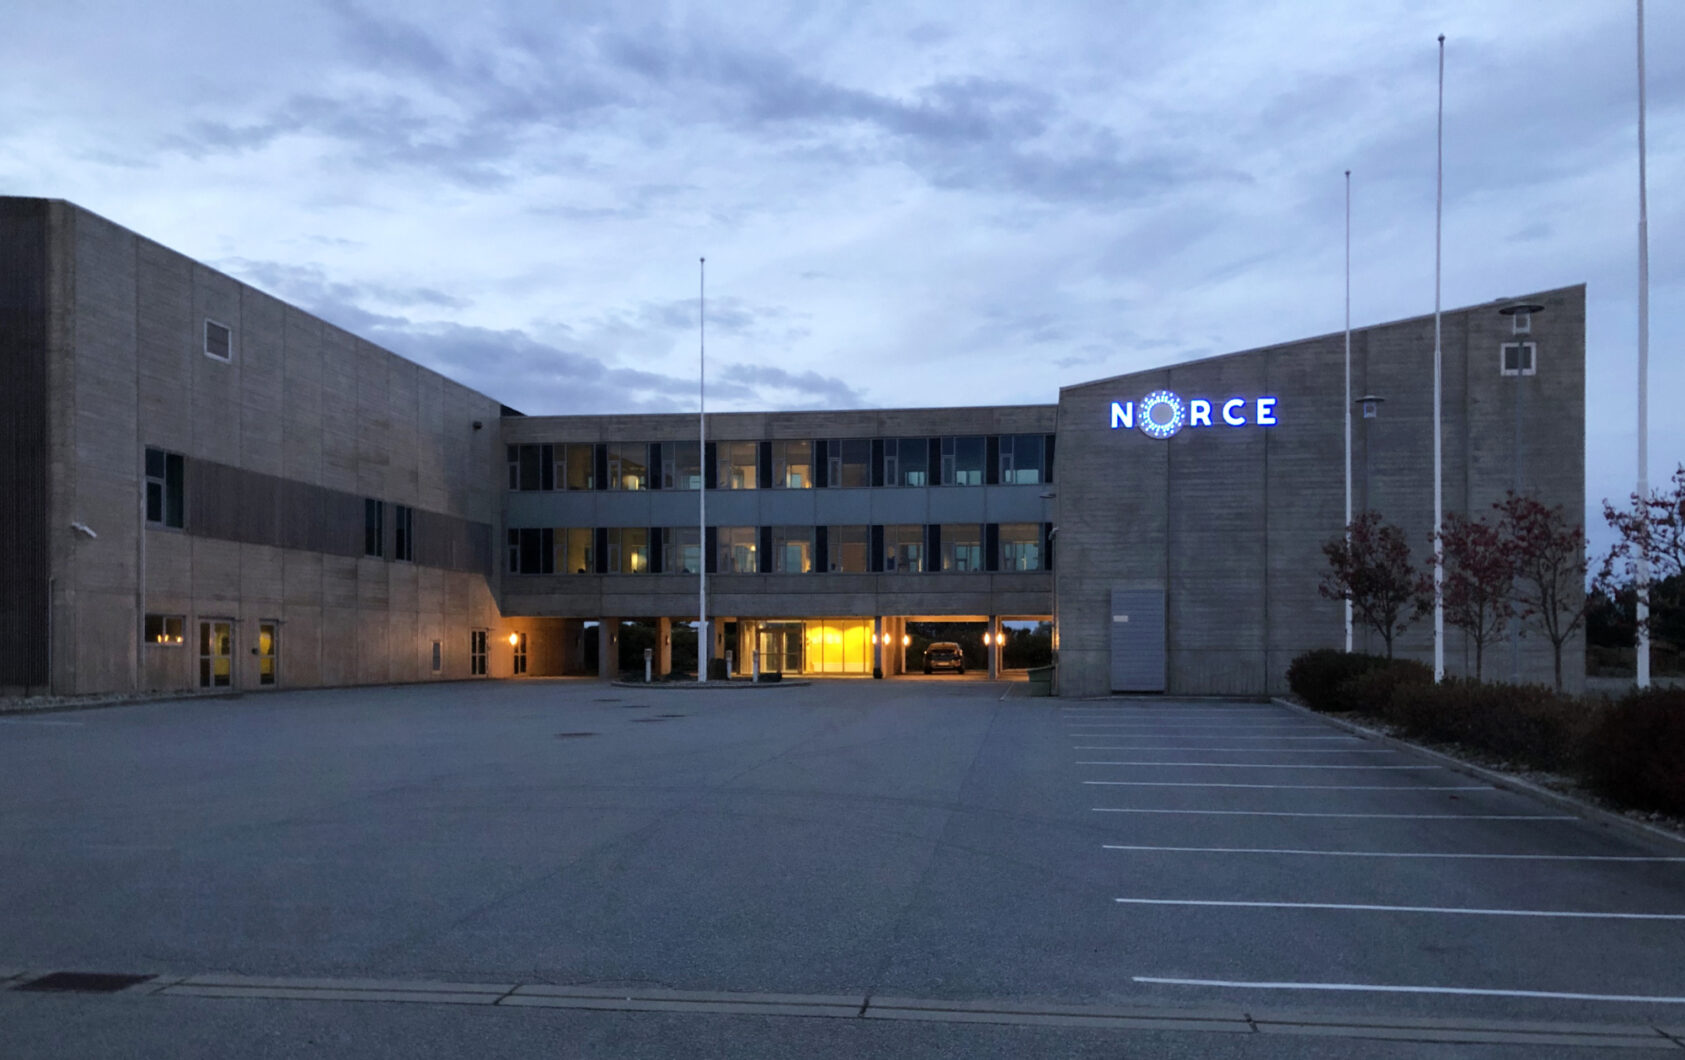 Bjarte Ludvig Hetlelid, Eiendommen NORCE har kjøpt ligger på den sørlige siden av Risavika., Risavika bredde, <p>Bjarte Ludvig Hetlelid</p>, Fasaden til et et forretningsbygg med NORCE logo